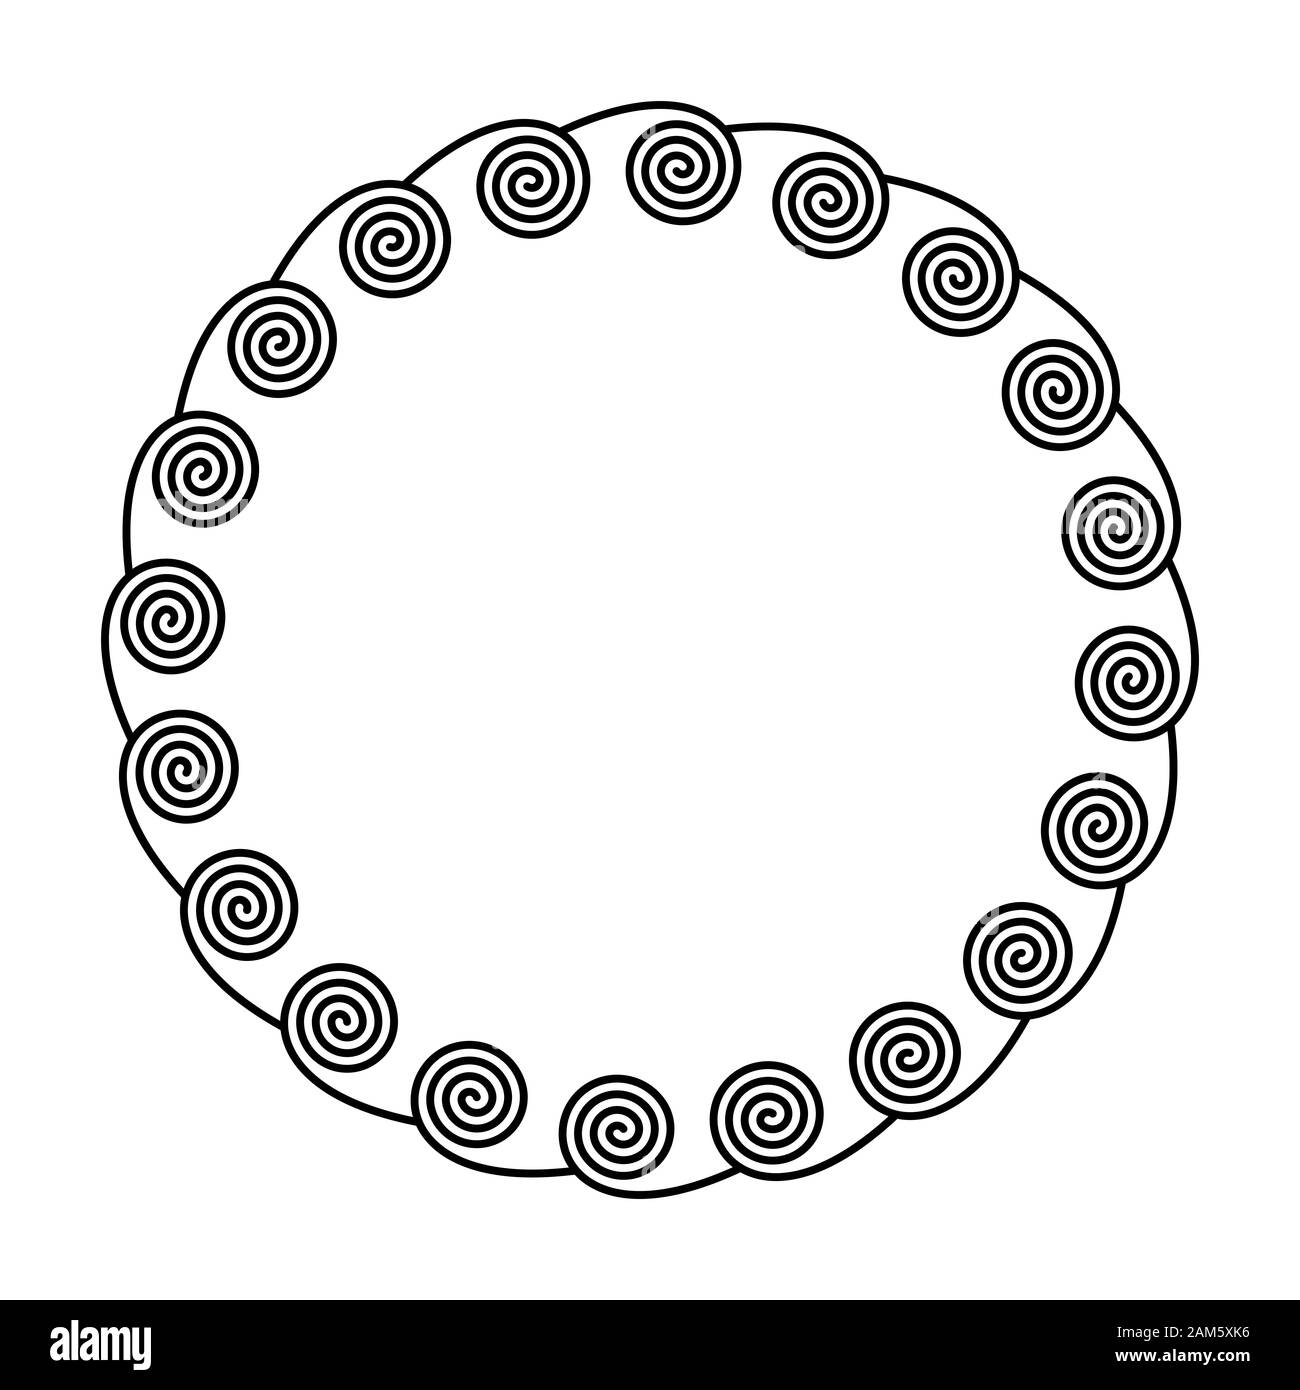 Kreis Rahmen durch Spiralen auf der Innenseite. Lineare Spiralen bilden einen dekorativen Muster und Muster, die durch wiederholte Linien gebaut. Stockfoto